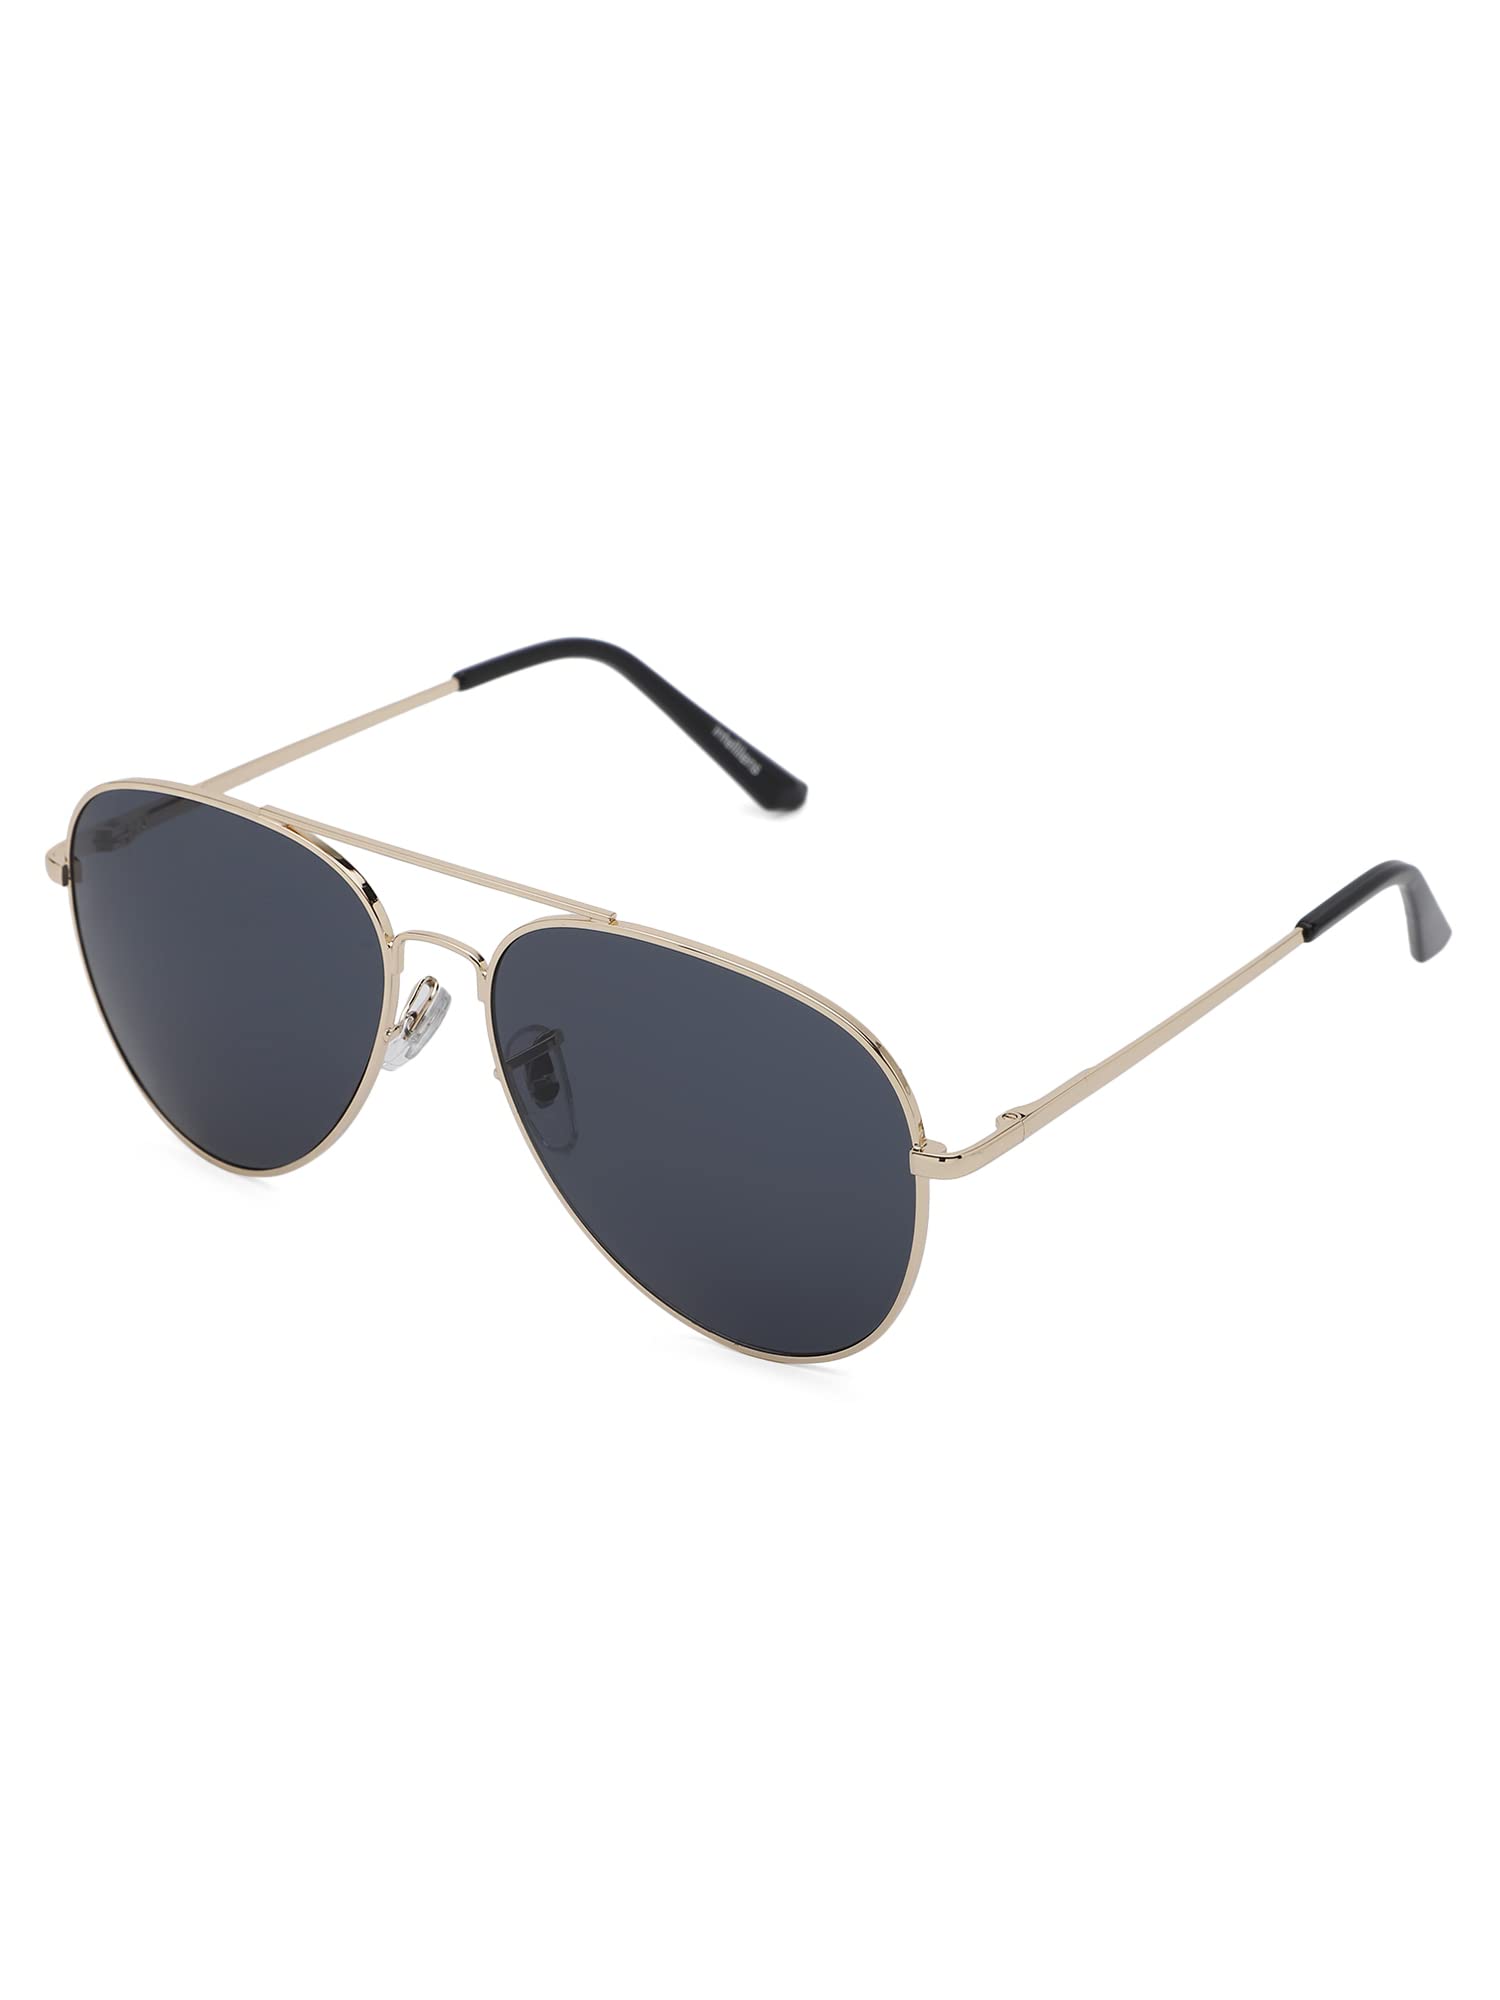 Intellilens Aviator Polarized & UV Protected Sunglasses For Men & Women | Goggles for Men & Women (Silver & Black) (60-20-145) - Pack of 1